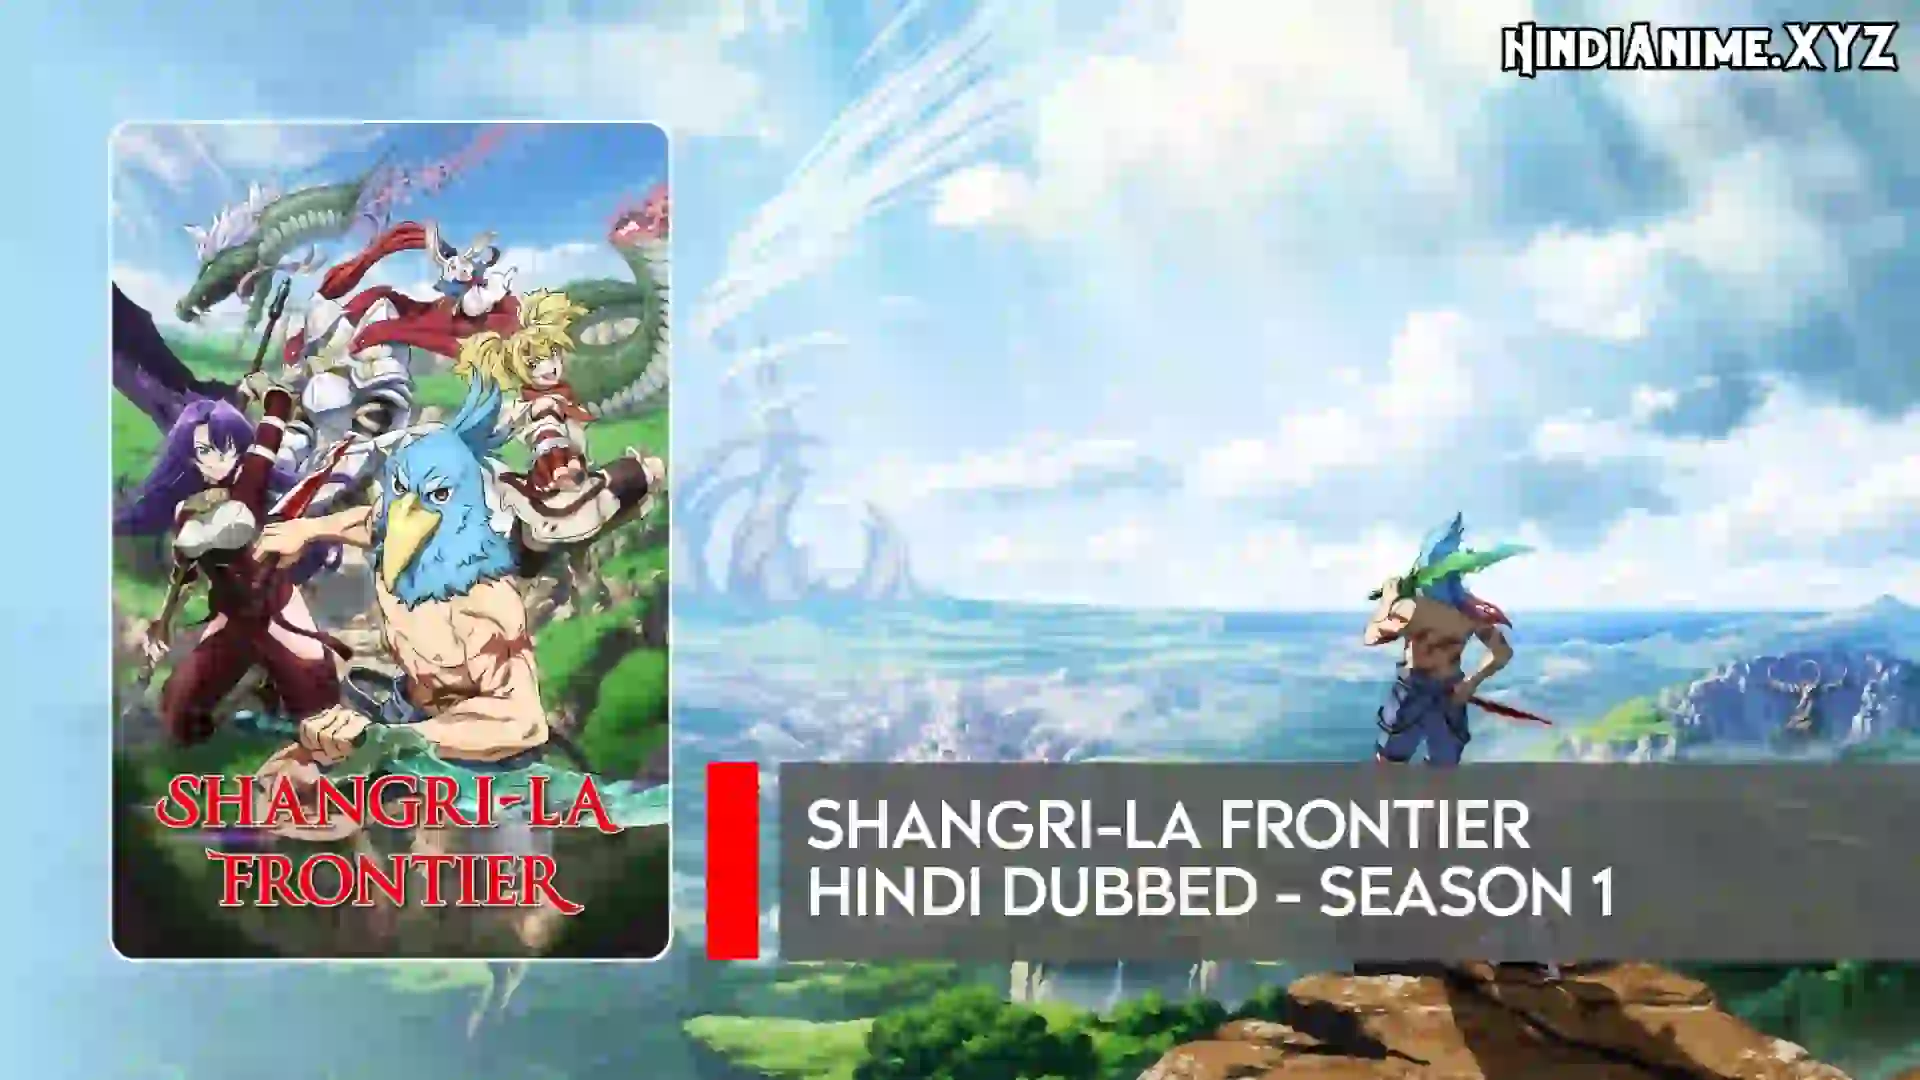 Shangri La Frontier Season 1 Hindi Dubbed Download